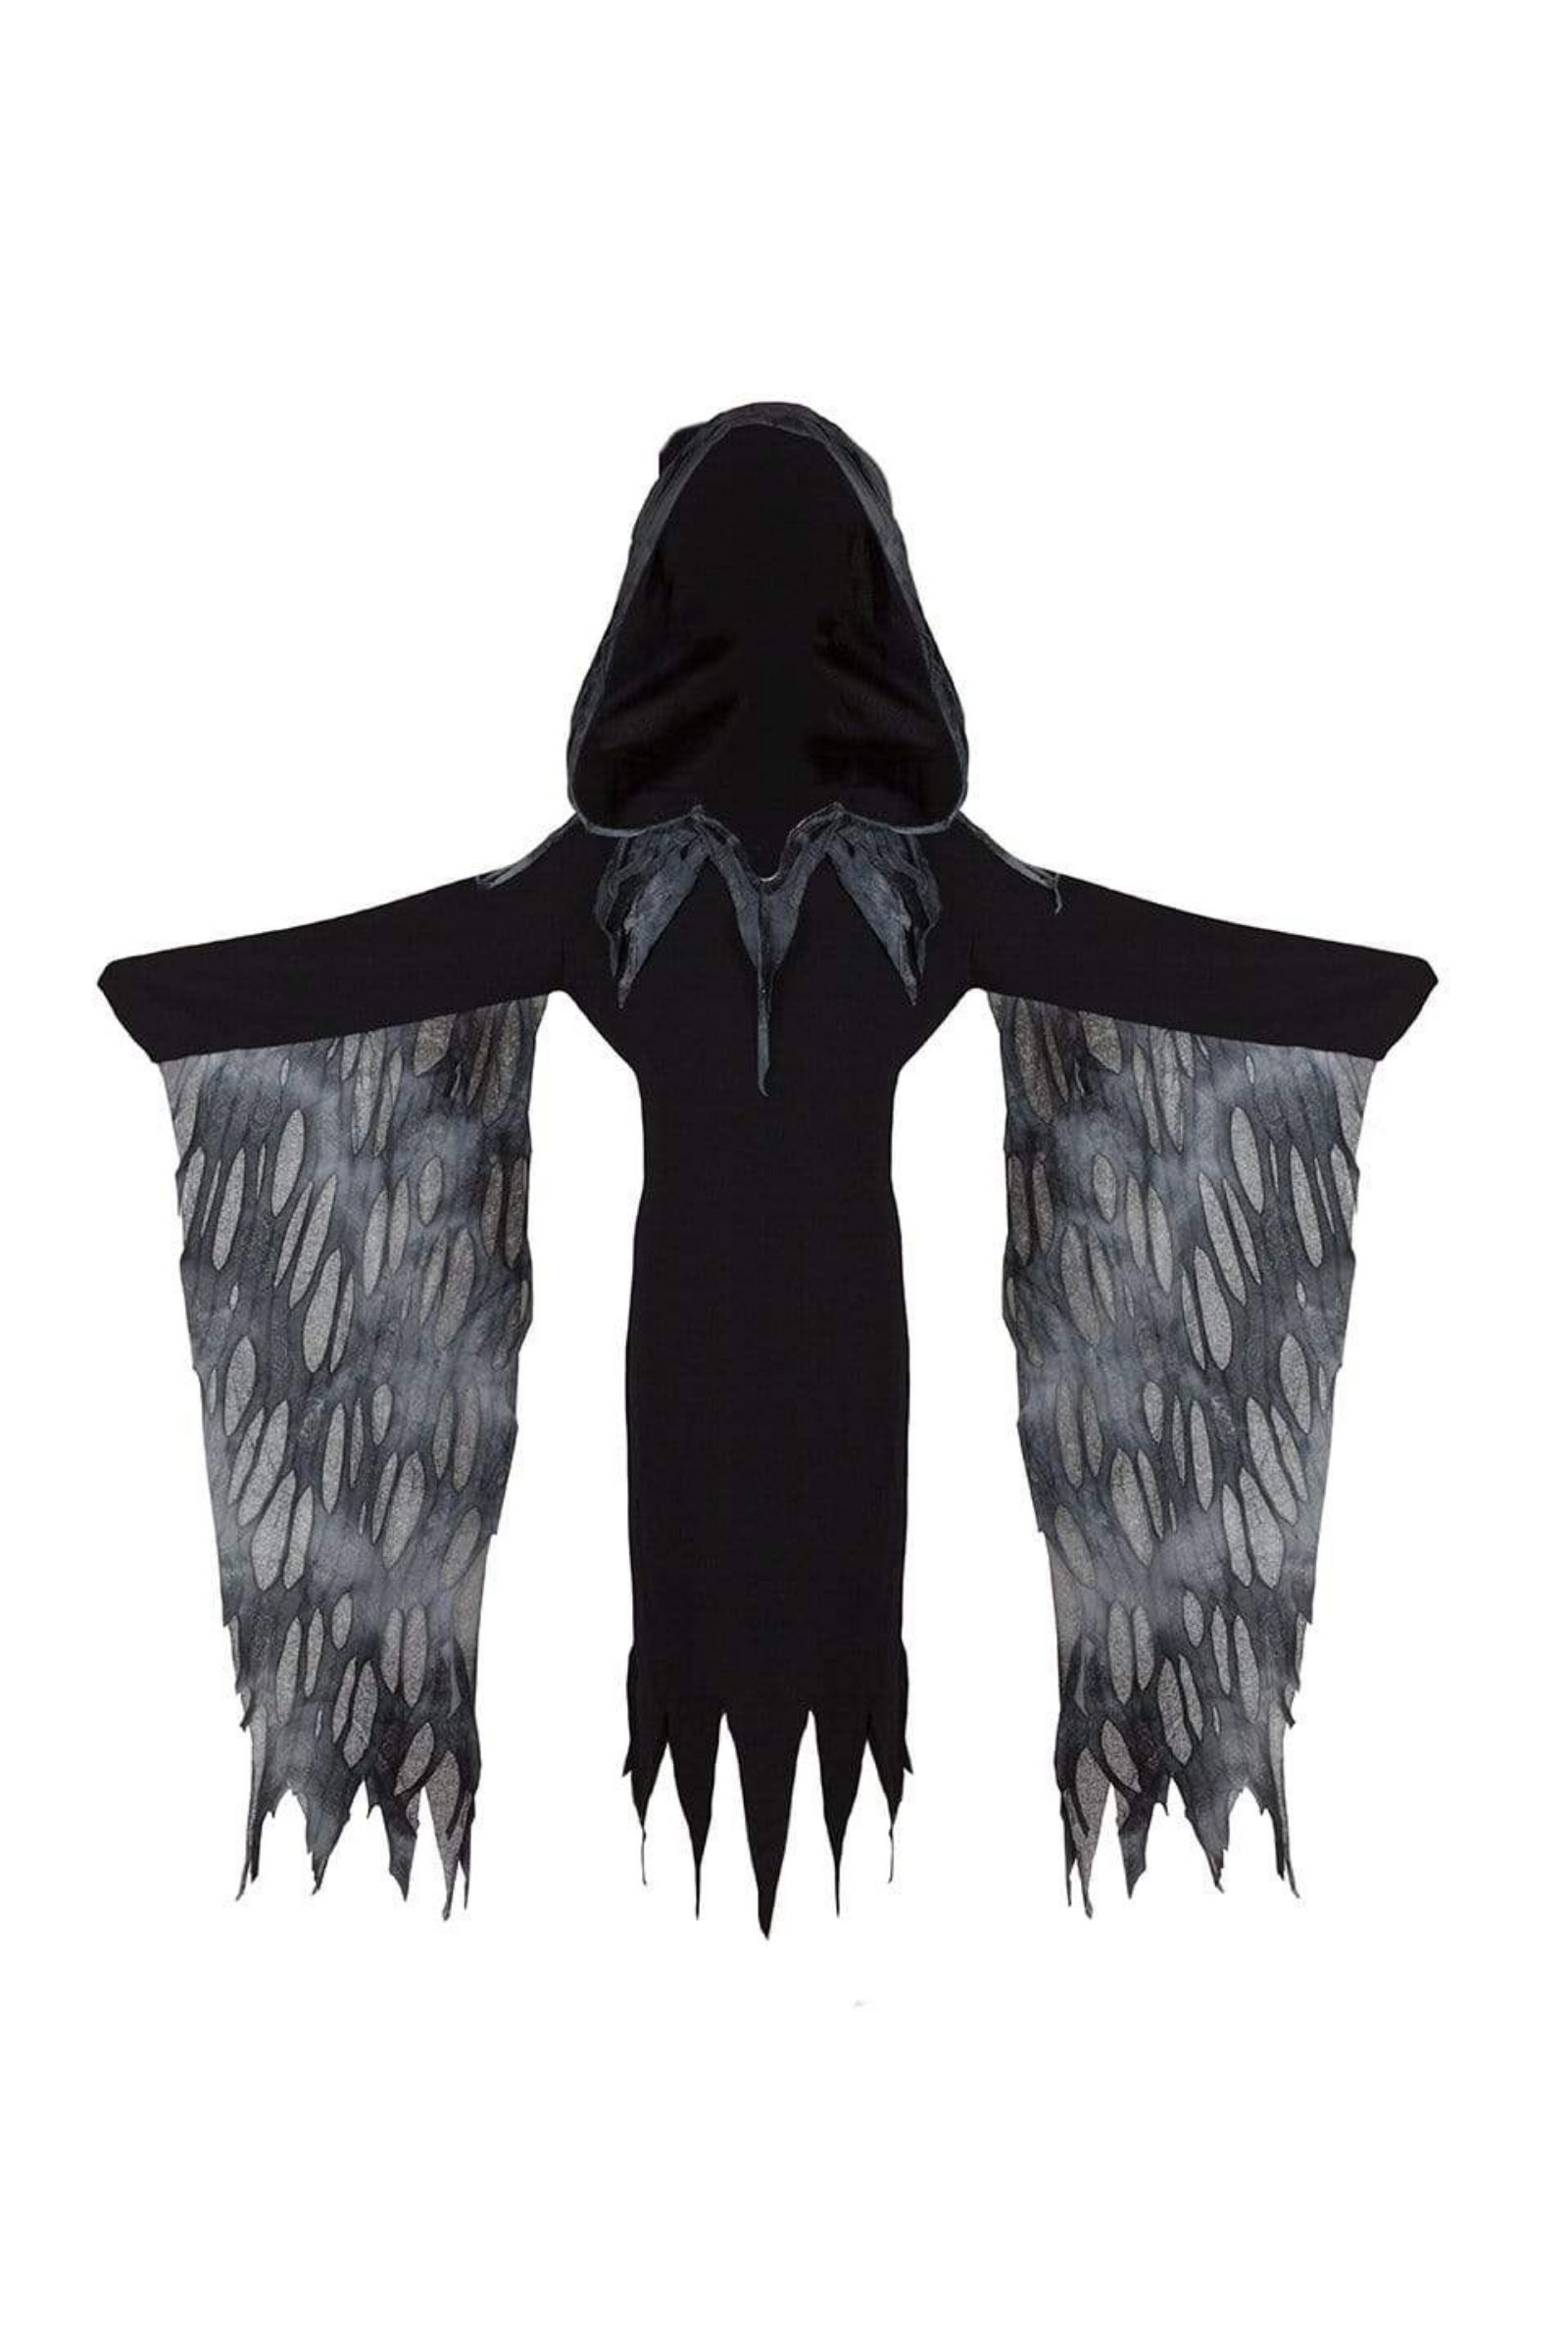 Grim Reaper Cloak